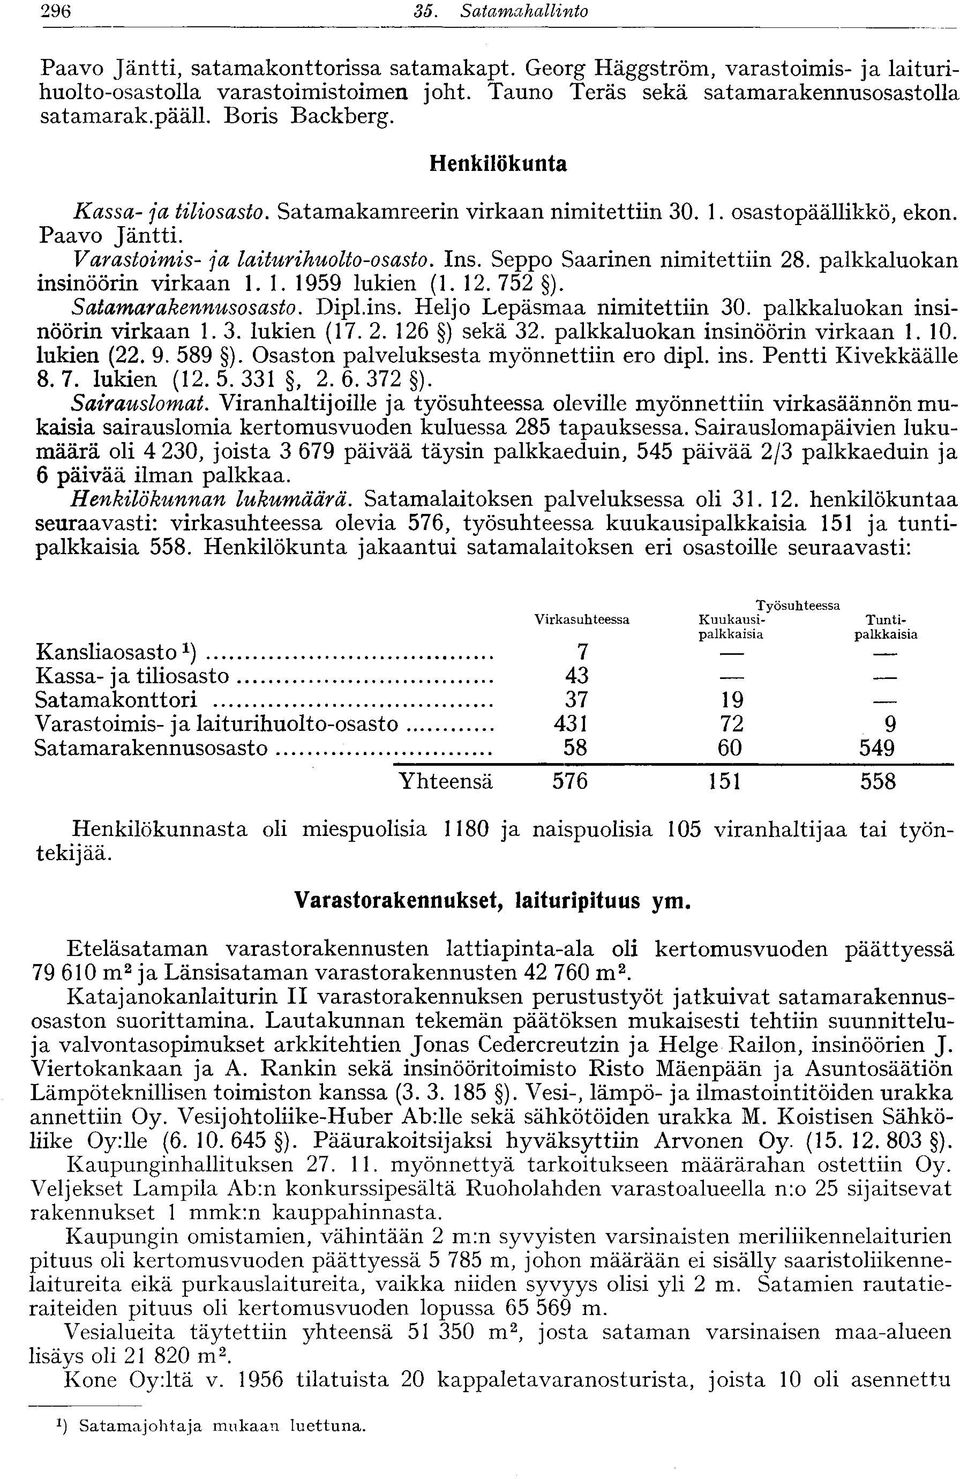 Seppo Saarinen nimitettiin 28. palkkaluokan insinöörin virkaan 1.1. 1959 lukien (1. 12. 752 ). Satamarakennusosasto. Dipl.ins. Heljo Lepäsmaa nimitettiin 30. palkkaluokan insinöörin virkaan 1.3. lukien (17.